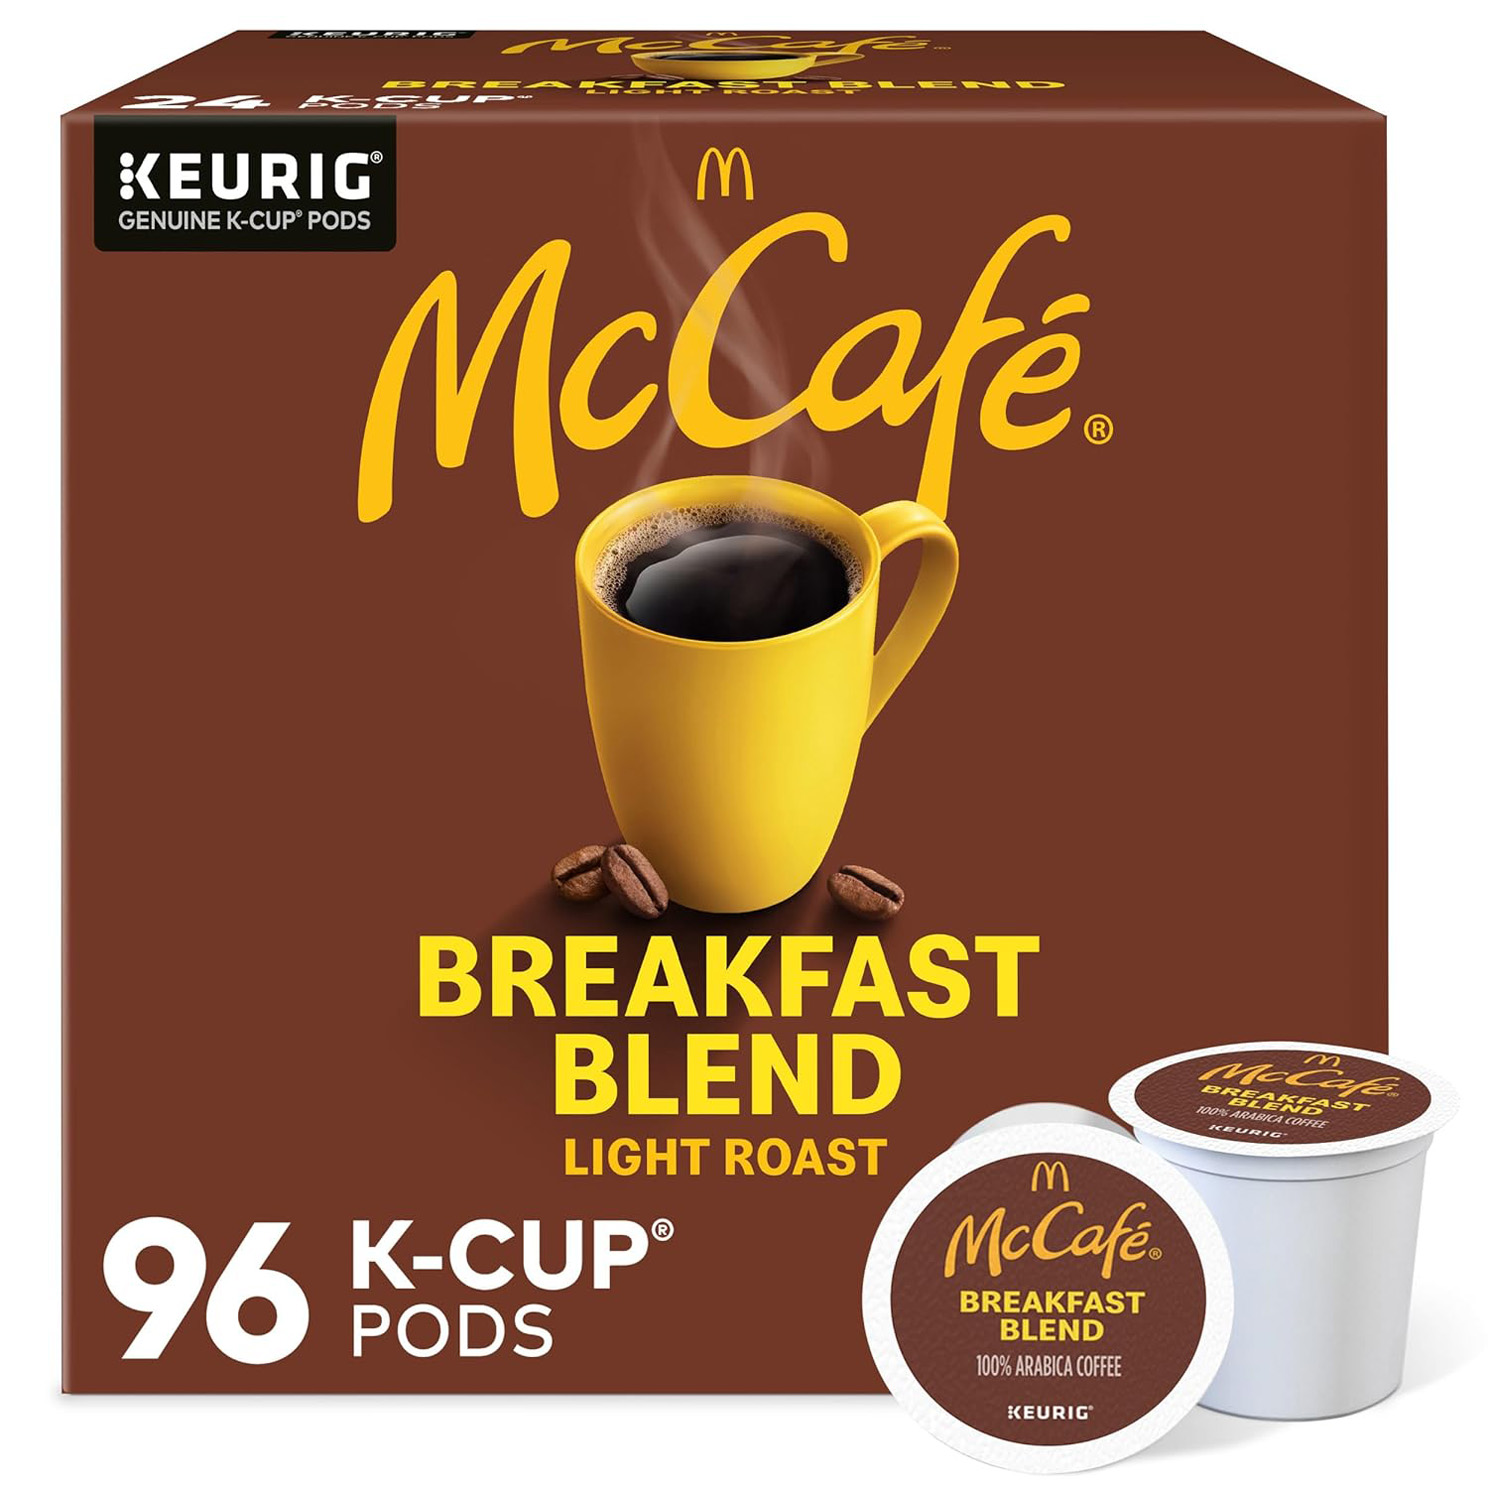 McCafe Breakfast Blend, Single-Serve Keurig K-Cup Pods, Light Roast Coffee Pods Pods